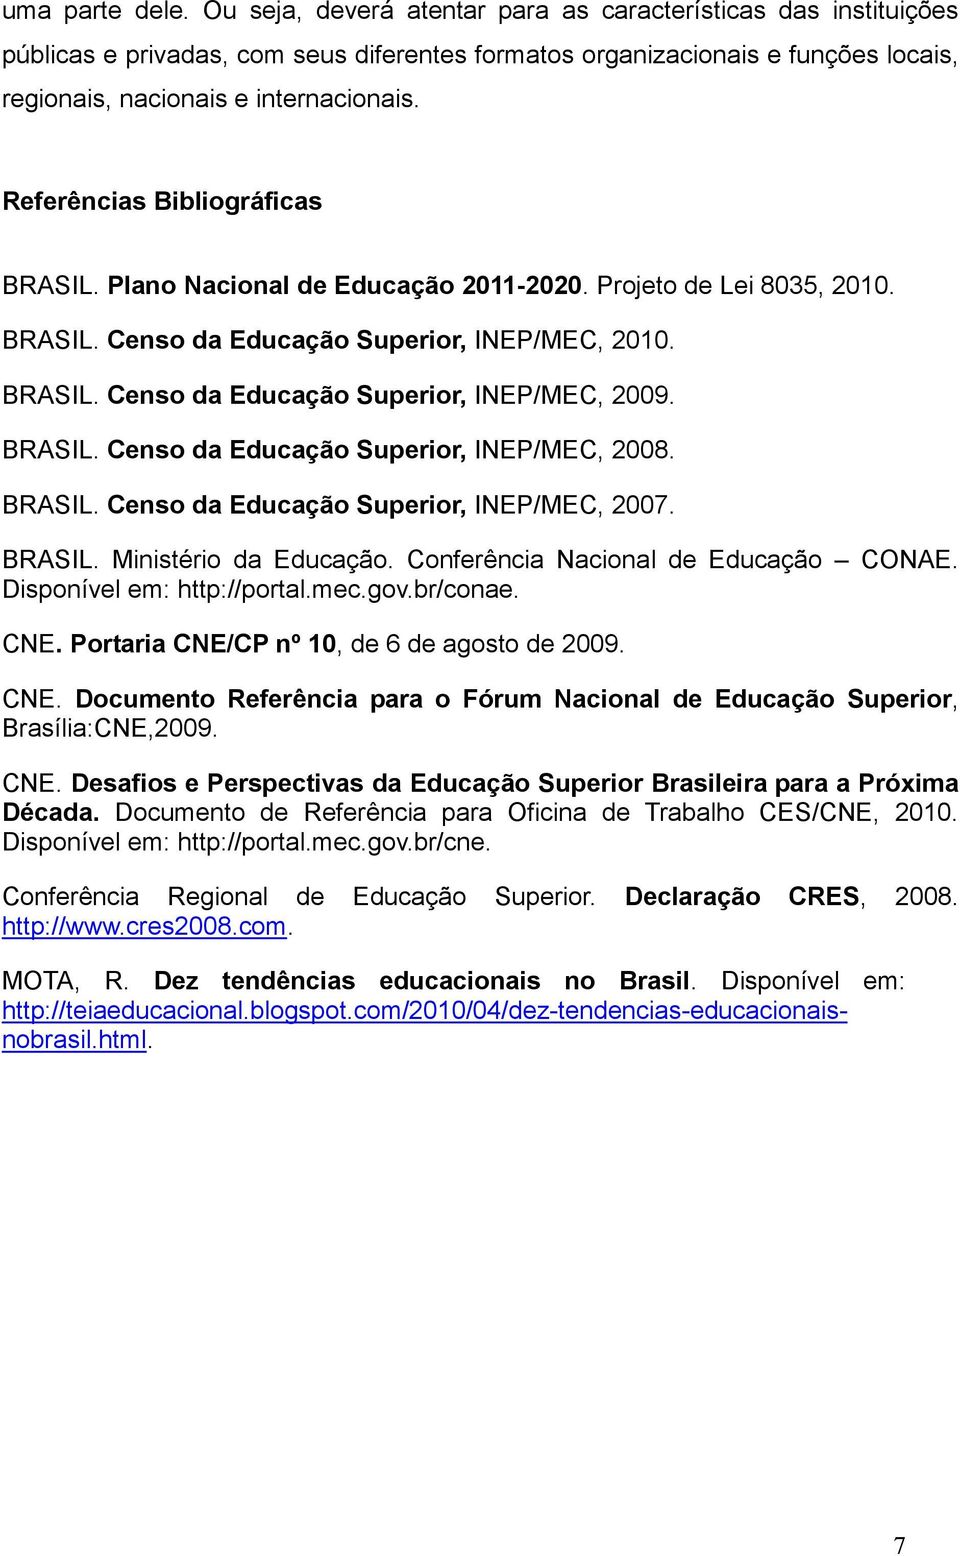 Referências Bibliográficas BRASIL. Plano Nacional de Educação 2011-2020. Projeto de Lei 8035, 2010. BRASIL. Censo da Educação Superior, INEP/MEC, 2010. BRASIL. Censo da Educação Superior, INEP/MEC, 2009.